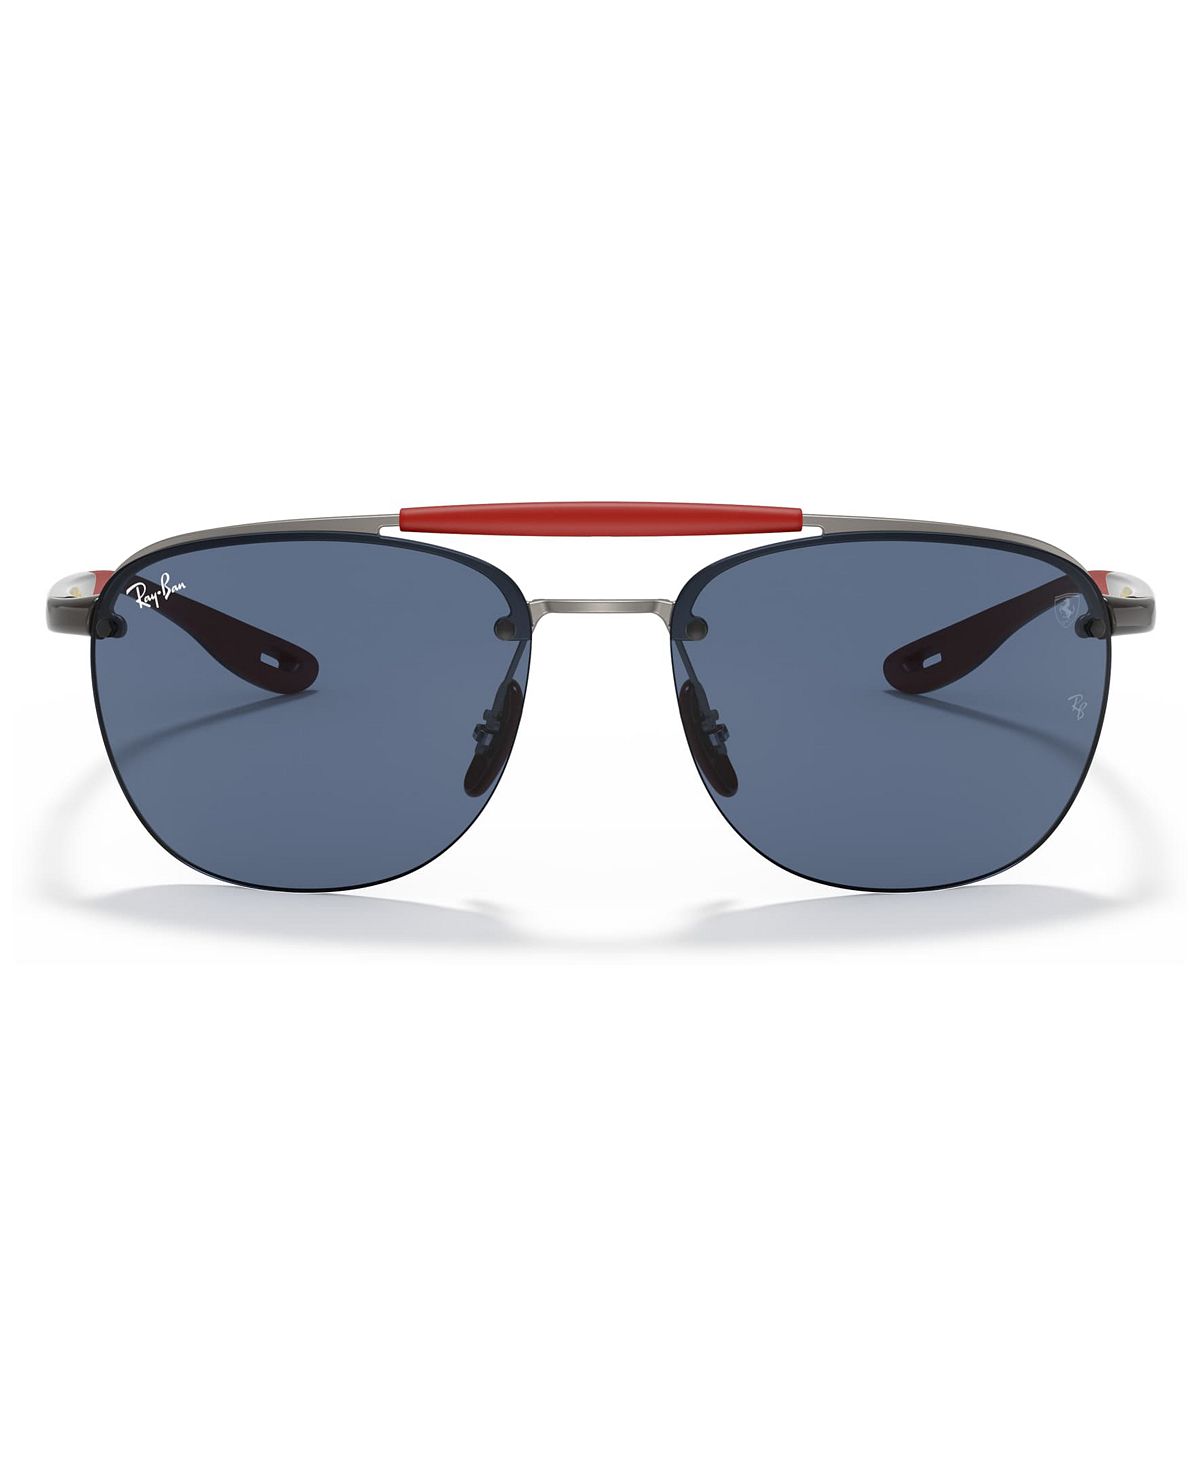 Мужские солнцезащитные очки, RB3662M Scuderia Ferrari Collection 59 Ray-Ban мужские солнцезащитные очки rb4310m scuderia ferrari collection 58 ray ban